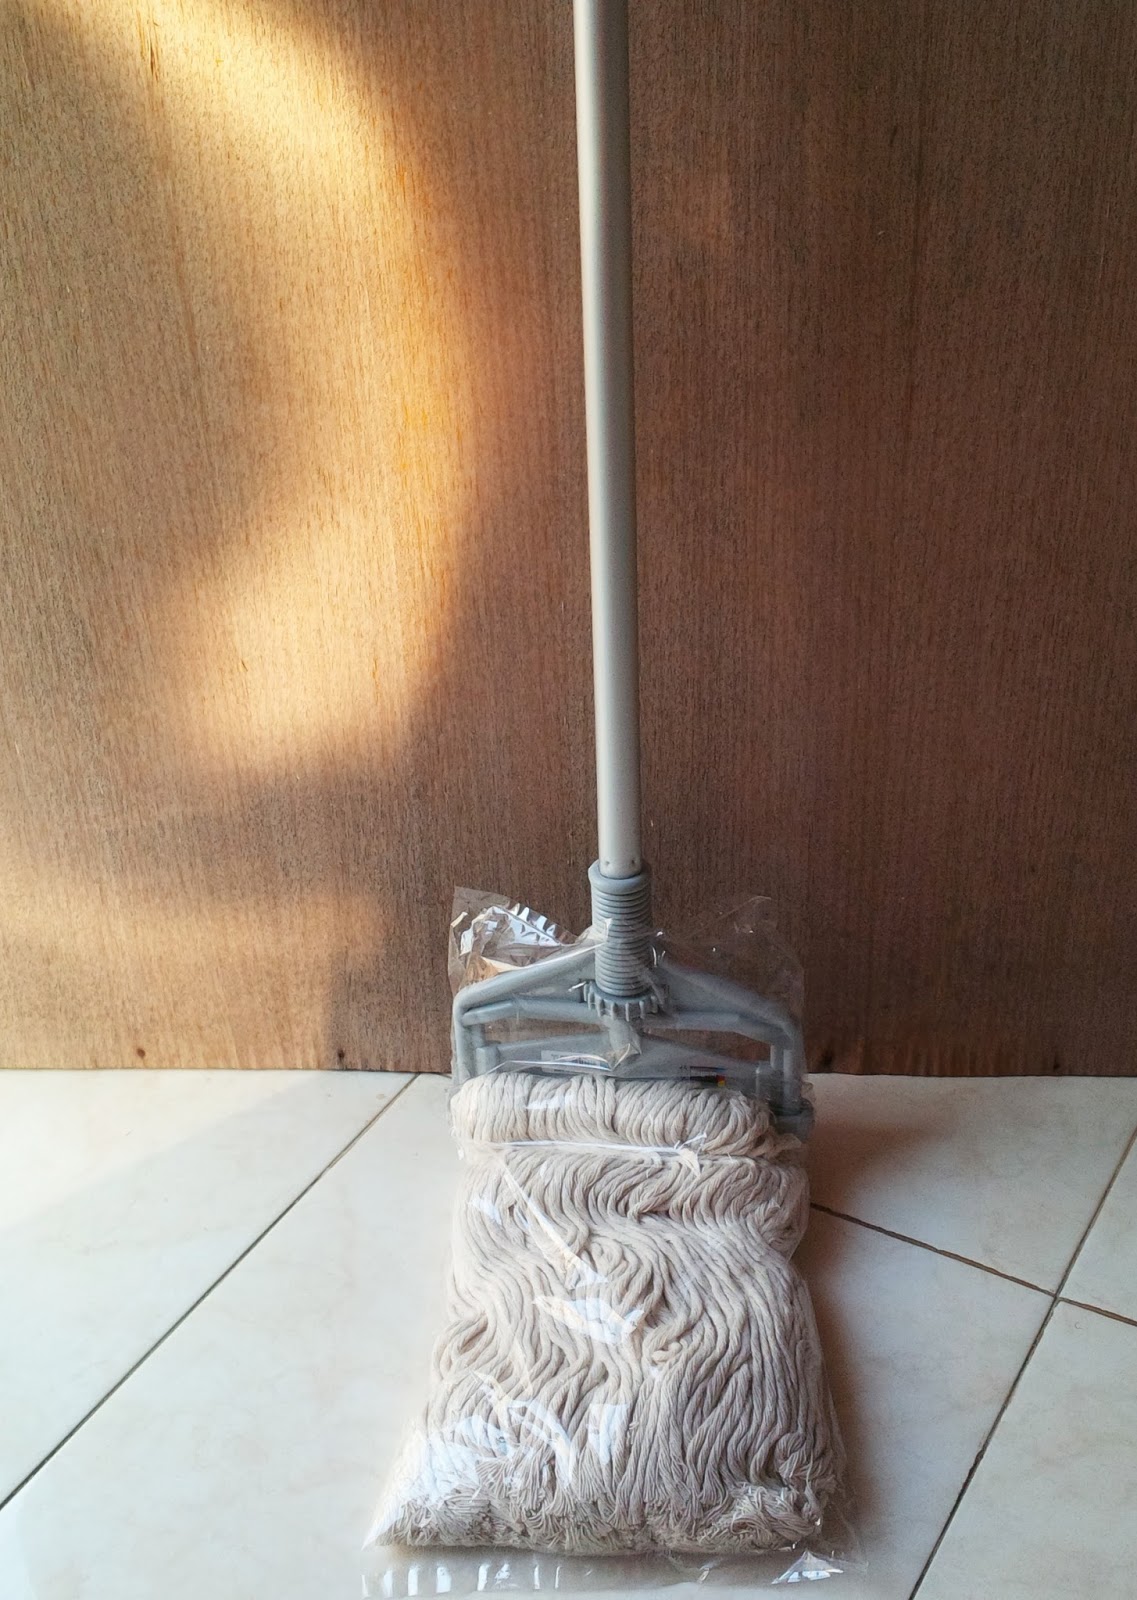 Housekeeping Equipment di Bali: Rupa rupa kain Pel  Head 